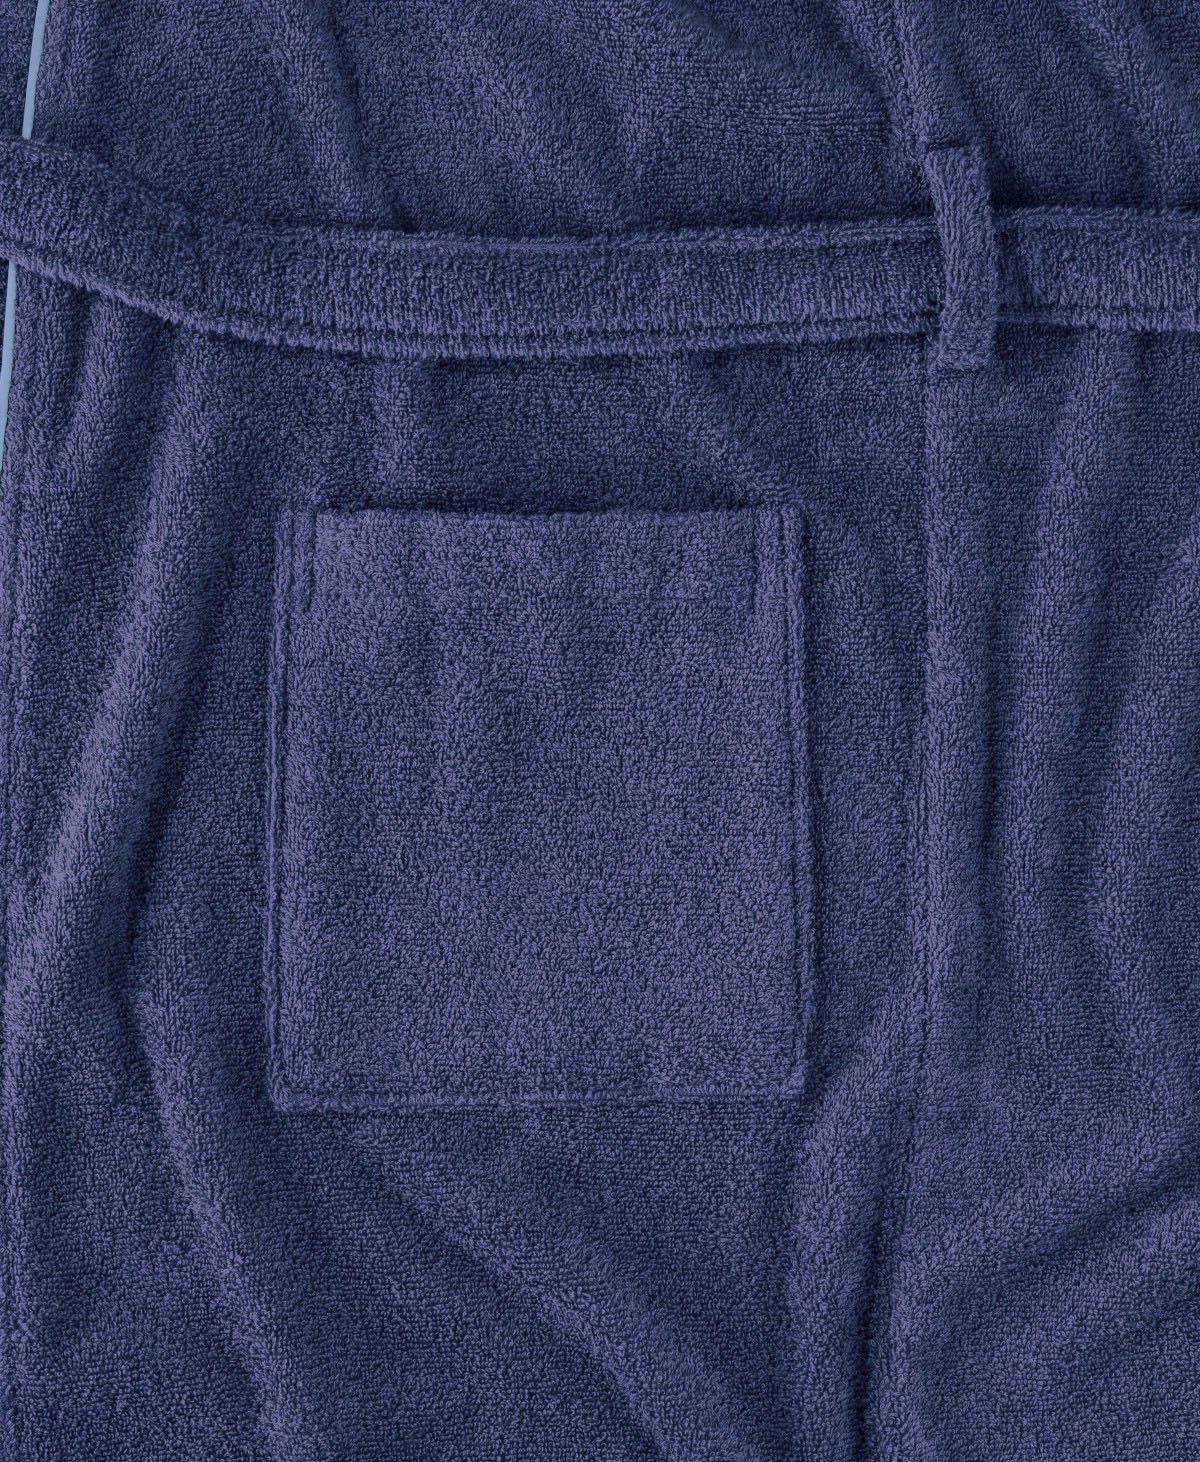 Gürtel, der Venice Bademantel Damen auf Logostickerei Brust und Chiemsee Chiemsee Baumwolle, blau Herren, Langform, Bademantel für Kimono-Kragen,